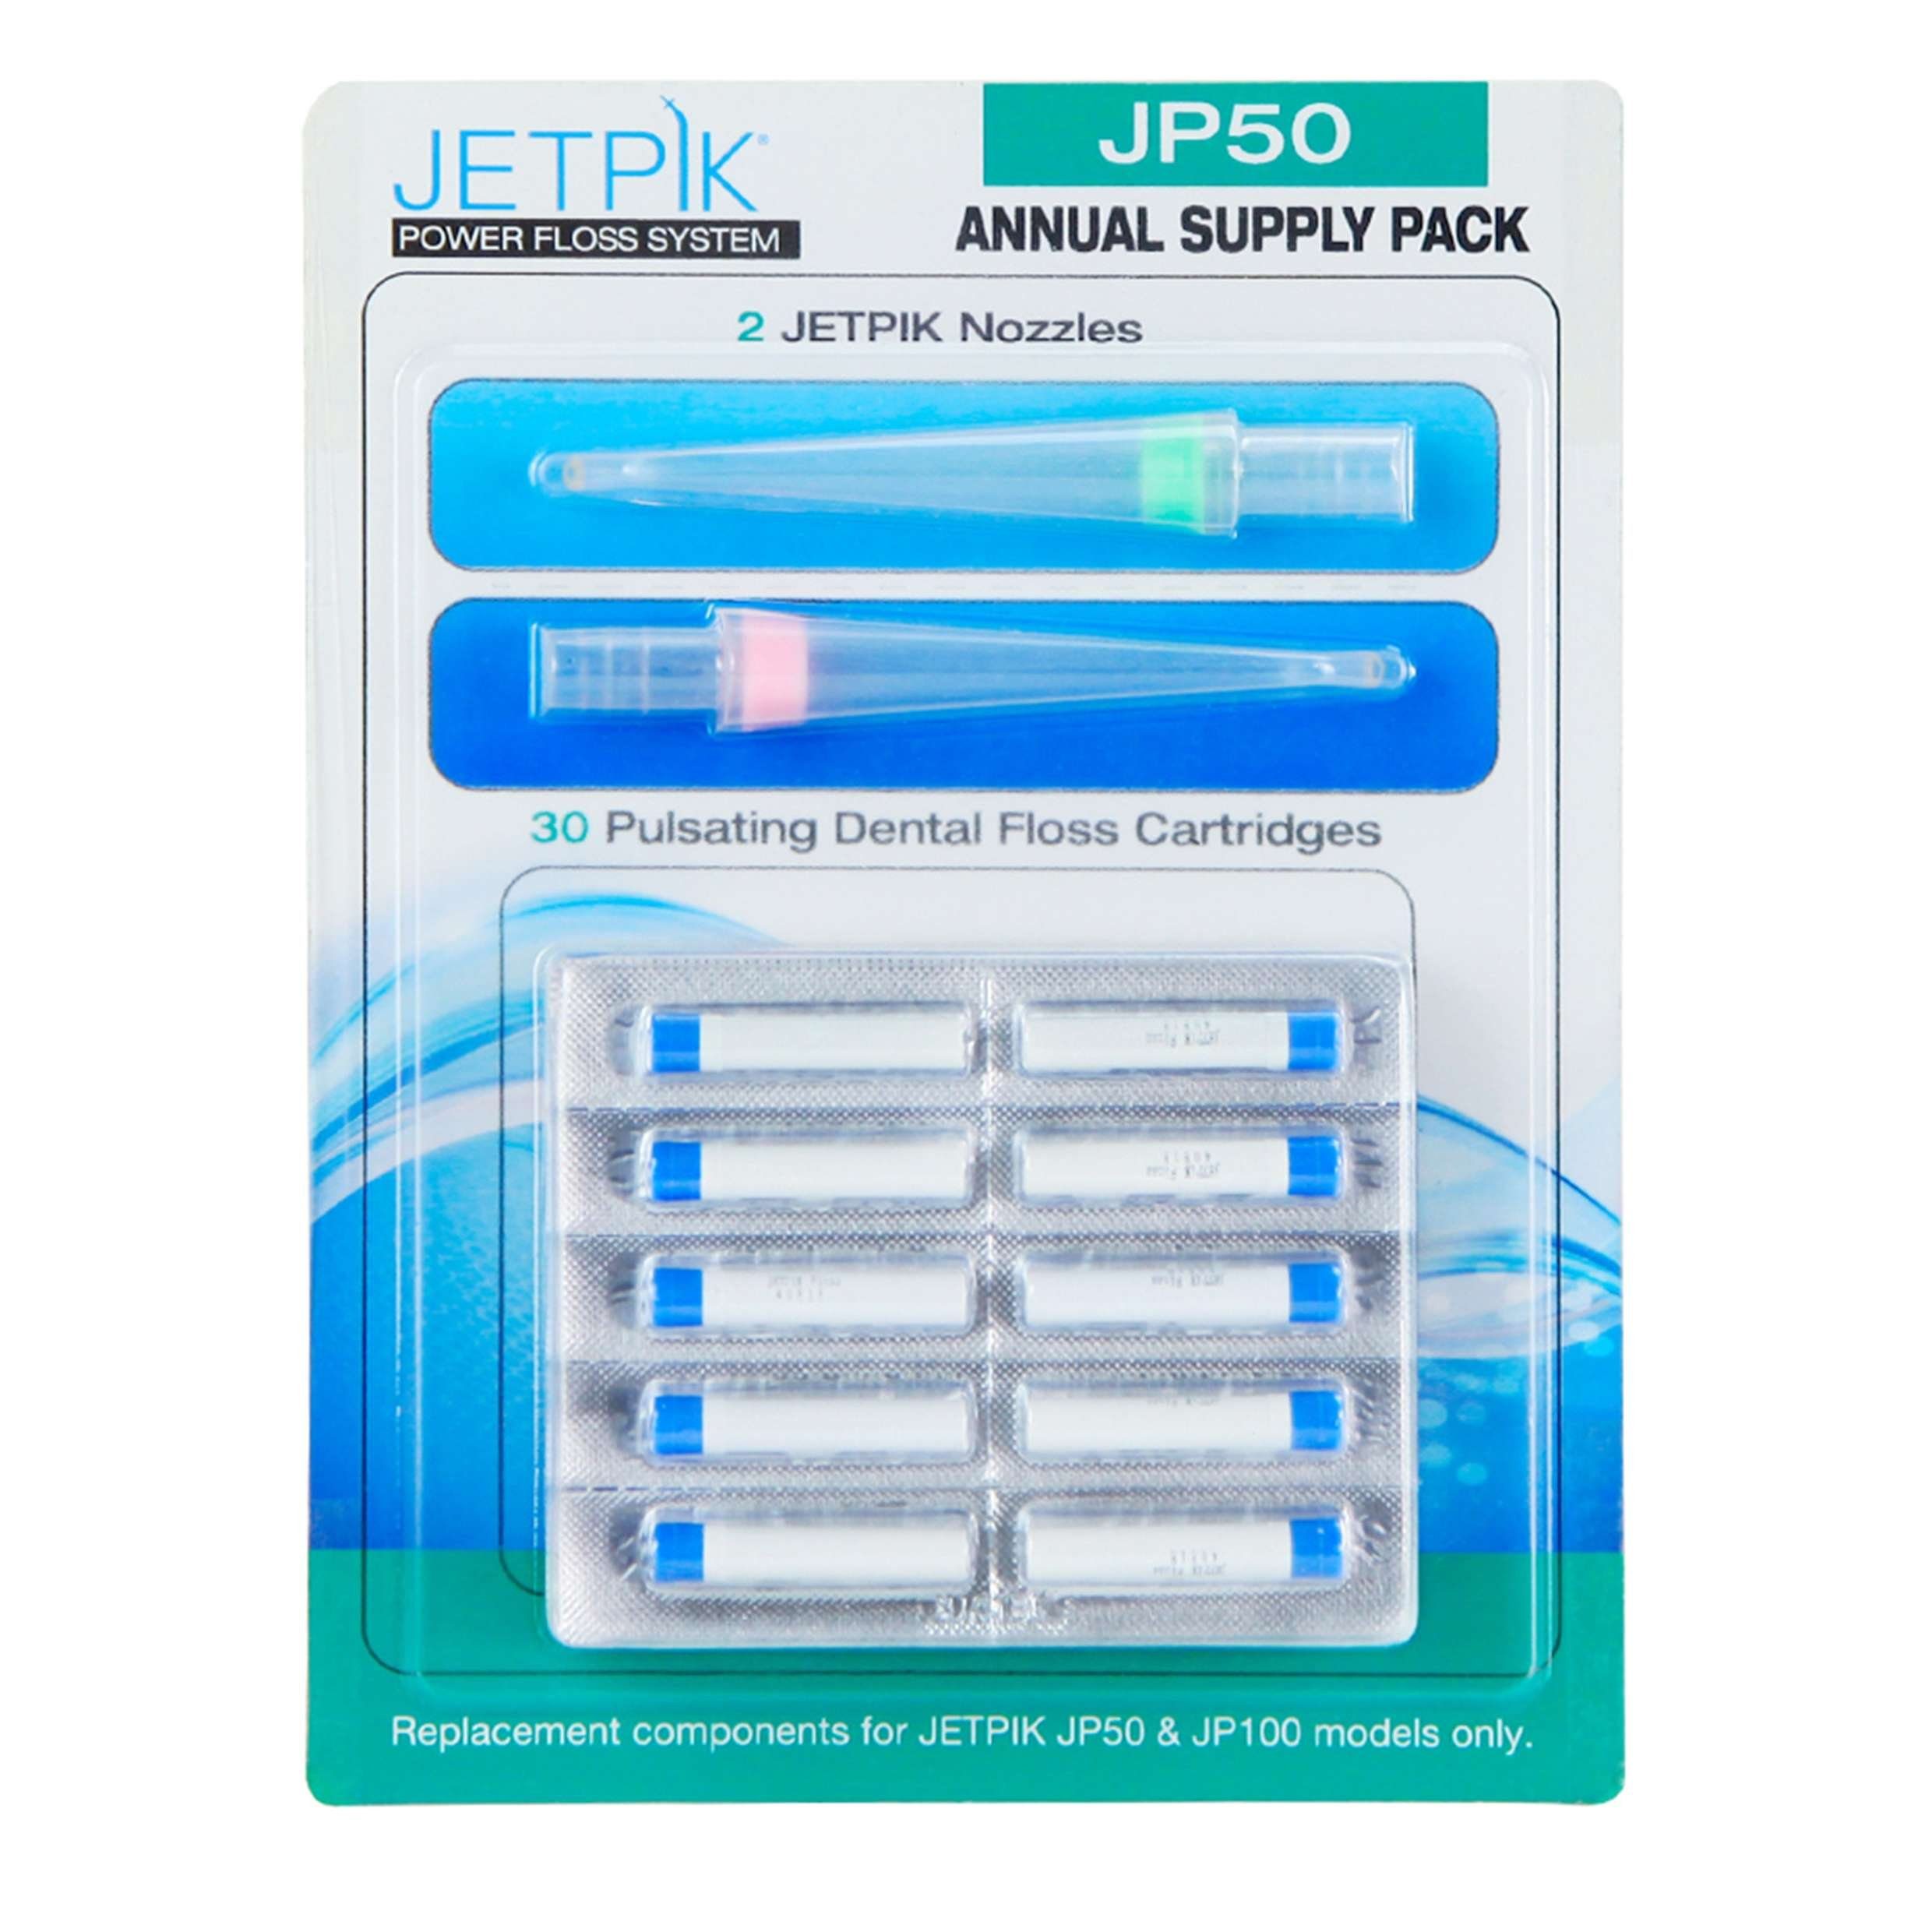 JETPIK Elektrische Zahnbürste JP 50Jahresvorratspackung, Düsenaufsätze und Zahnseidenpatronen